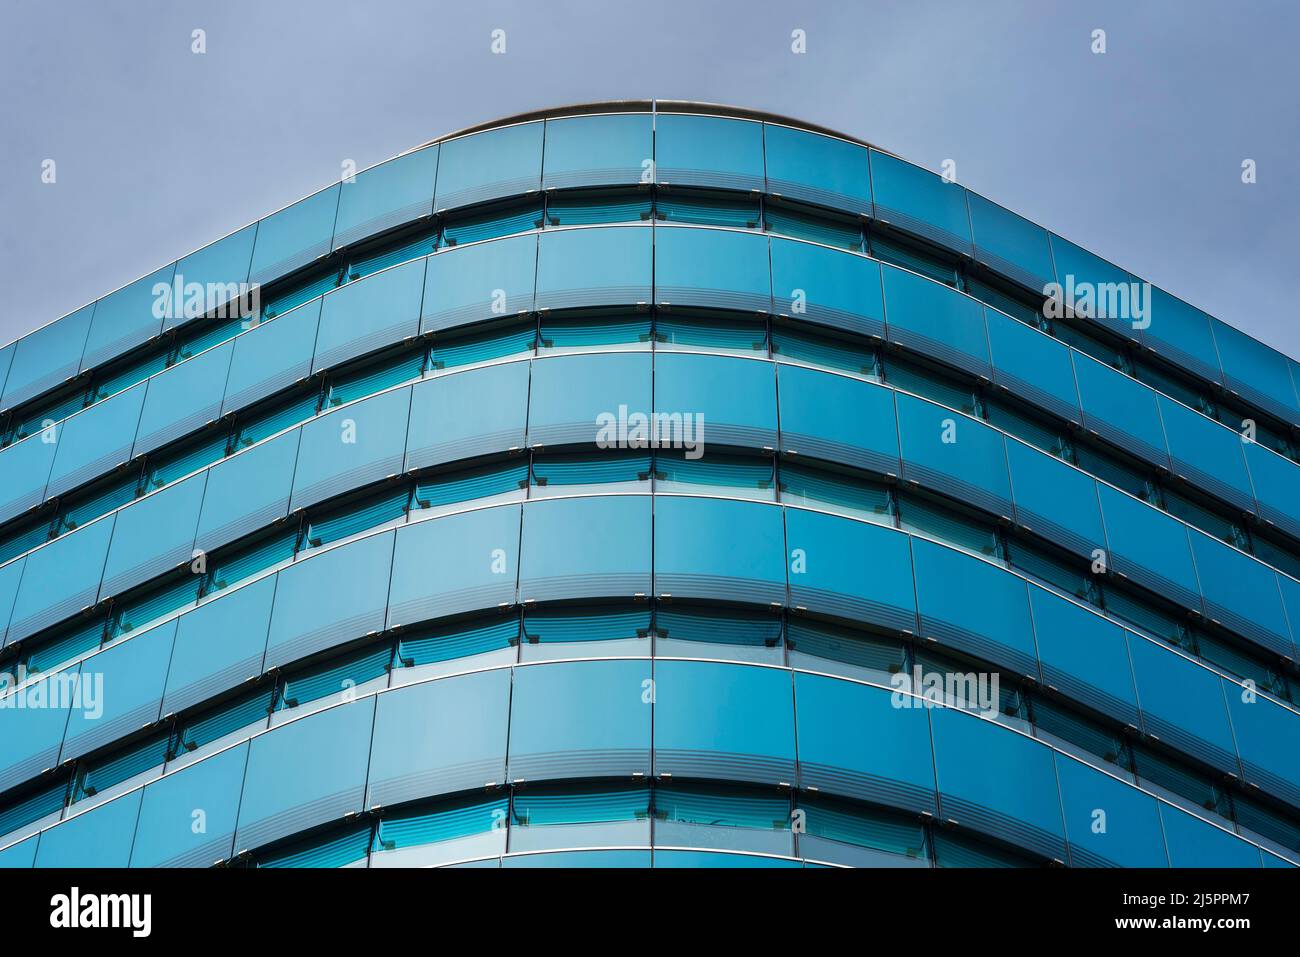 Blauer, glasverkleideter Turmblock in einer modernen Geschäftsentwicklung. Zentral gelegenes Geschäftsviertel. City of London. Stockfoto